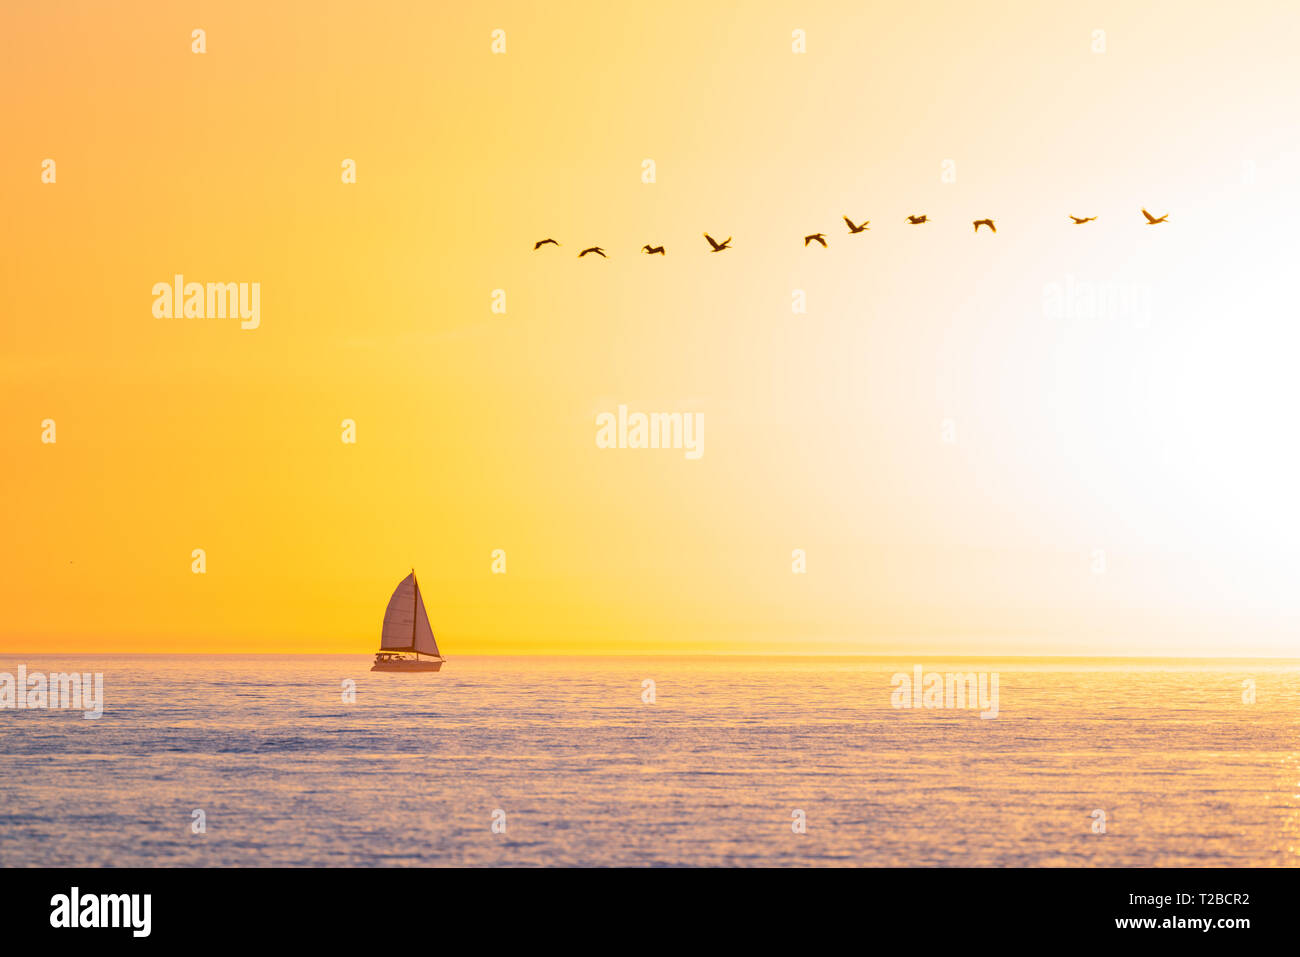 Un voilier est perçu à partir de la plage de Fort Myers, Floride la voile vers le soleil clair contre un ciel clair dans l'océan ouvert avec une ligne d'oiseaux volant abo Banque D'Images